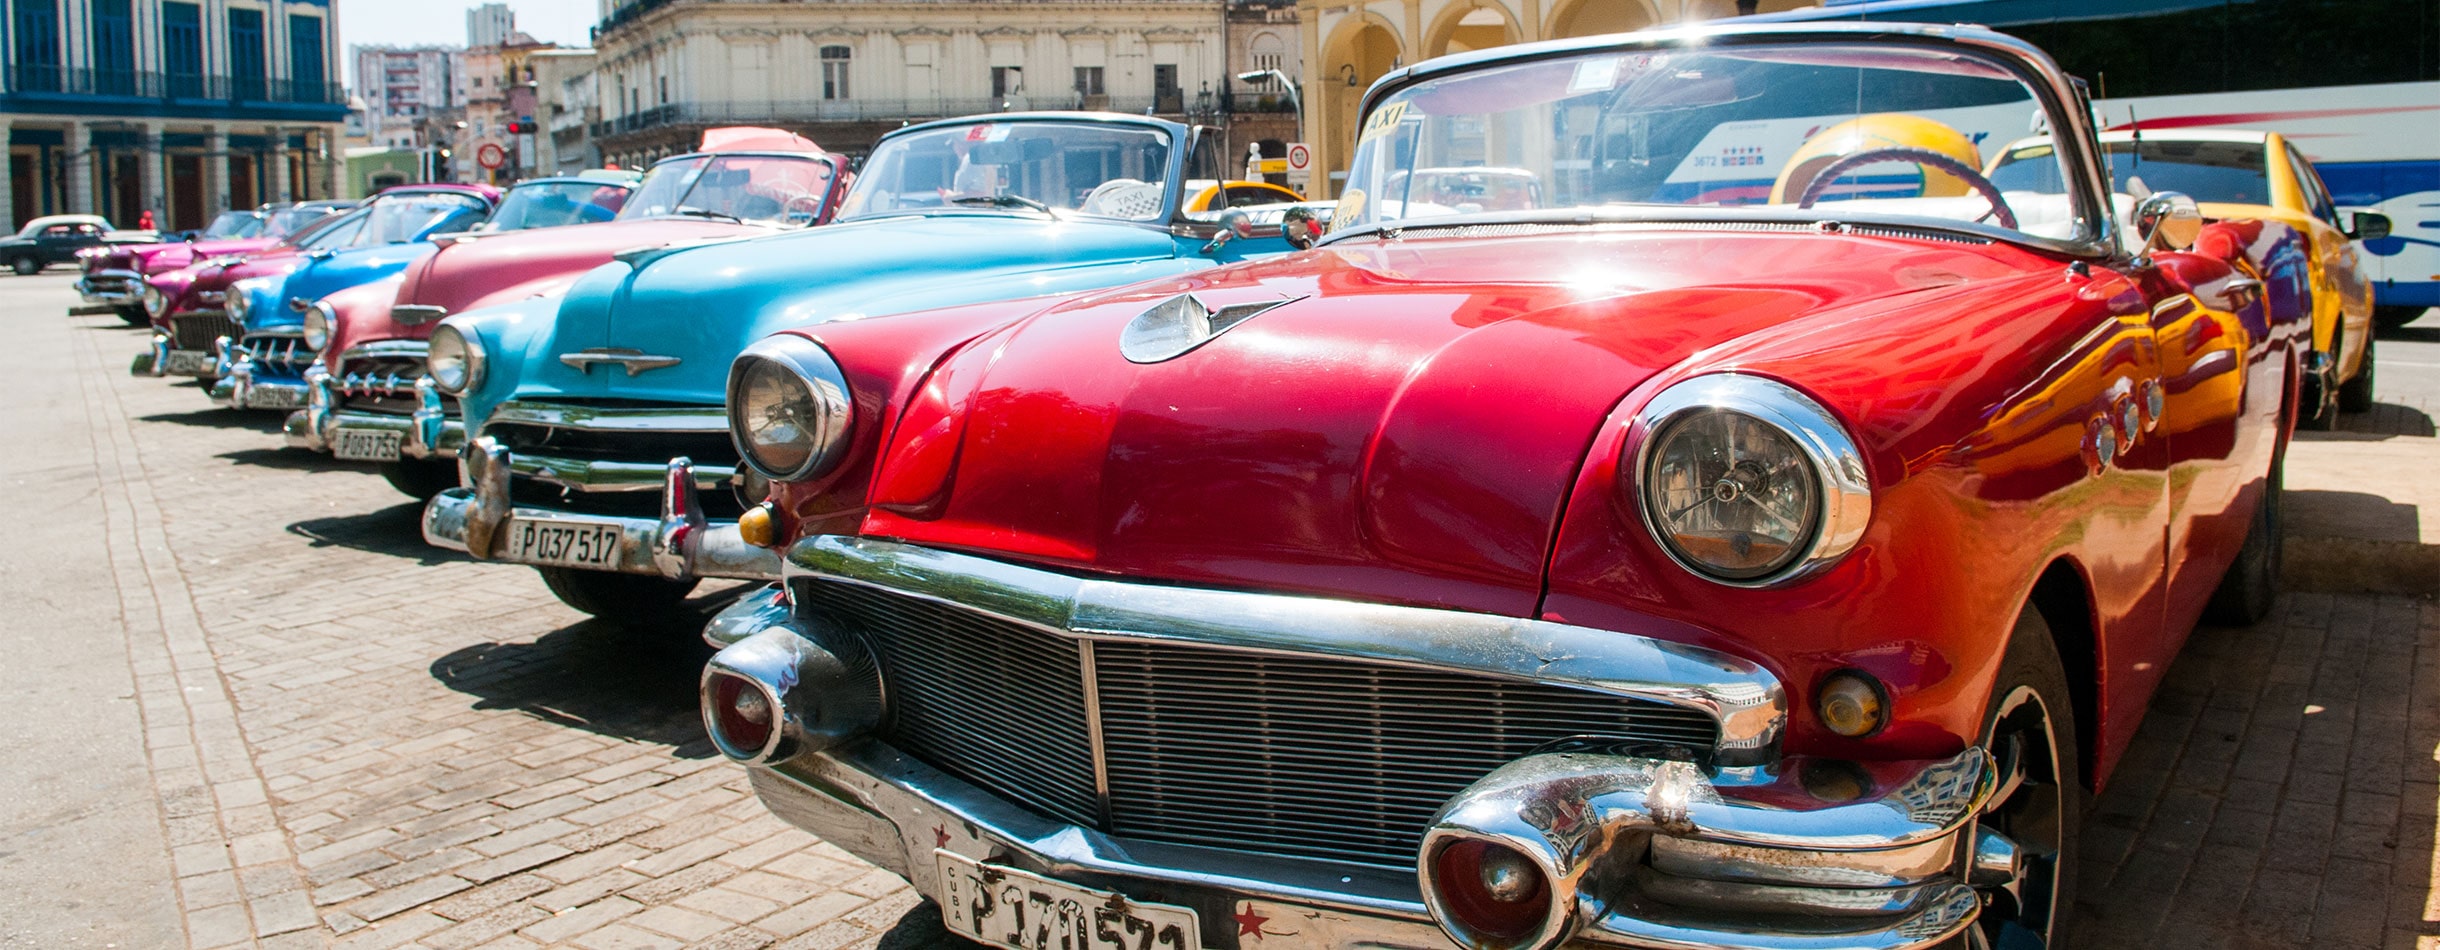 Cars, Havana, Cuba 